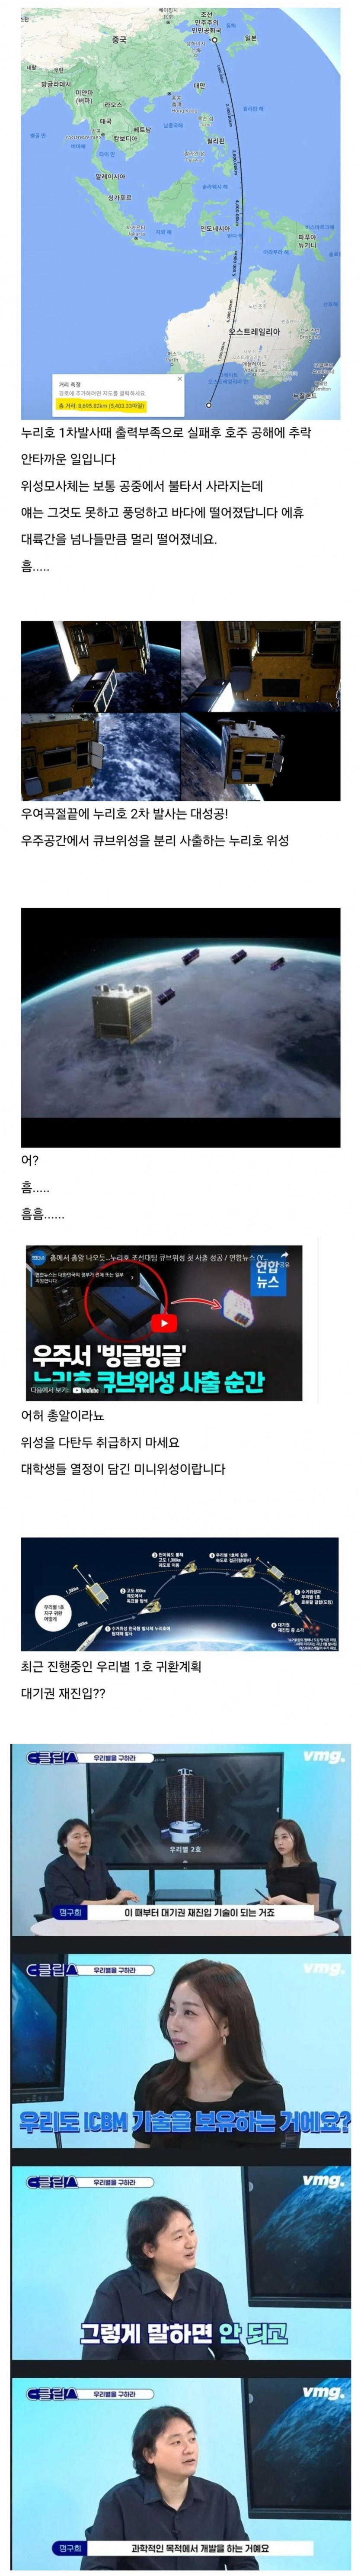 한국의 위성기술 근황.jpg(0)